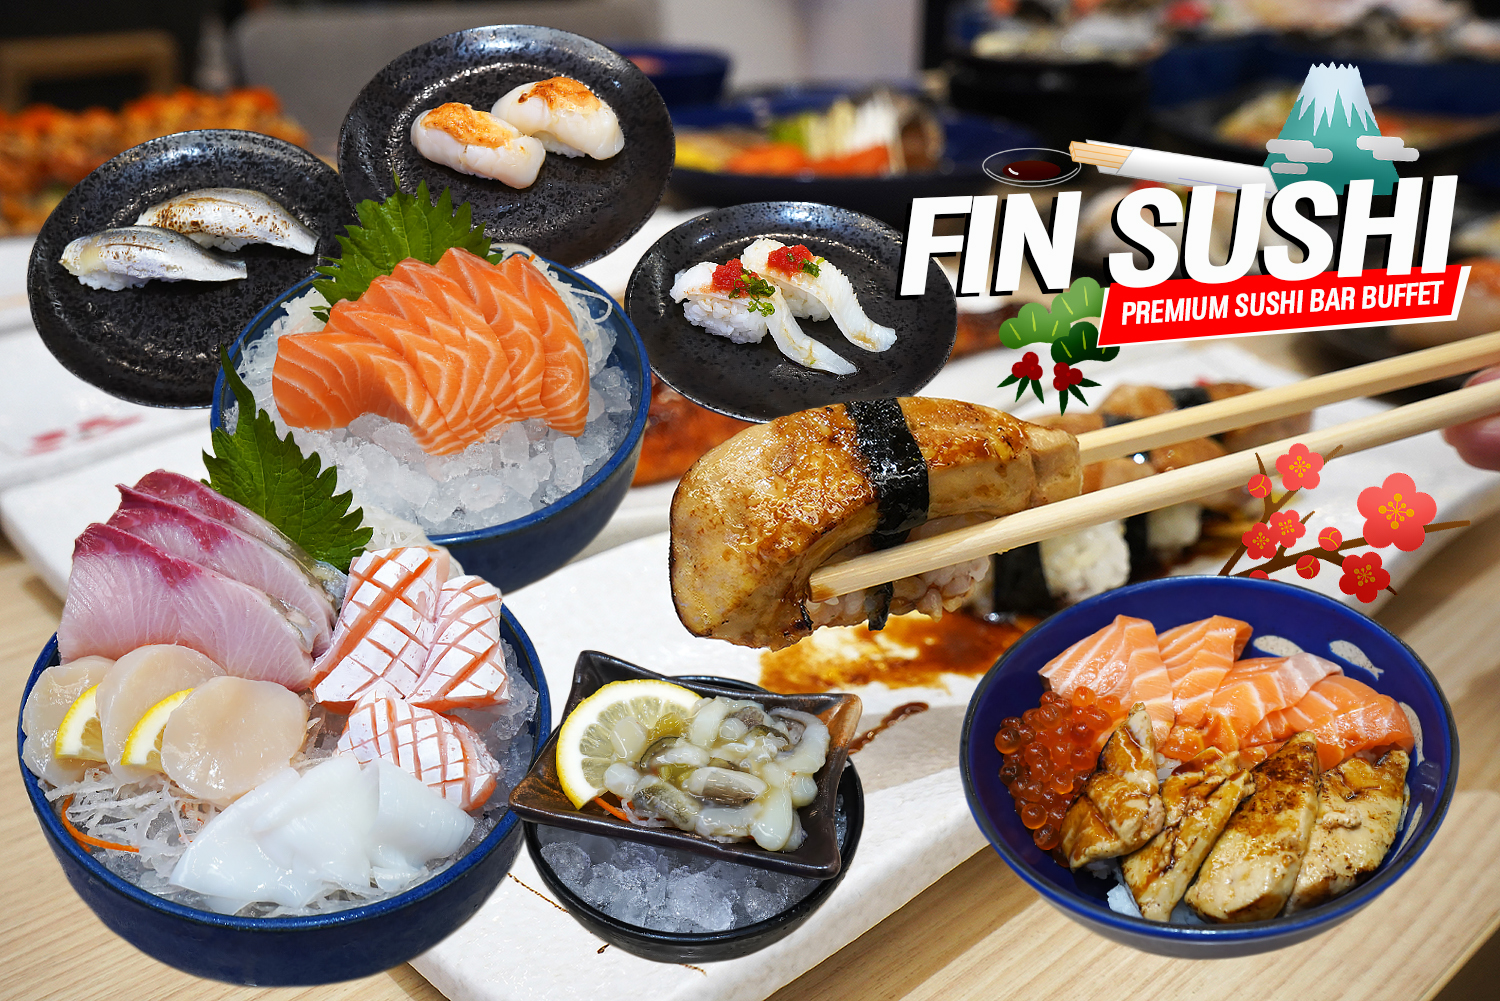 กินอาหารญี่ปุ่นแบบบุฟเฟ่ต์ วัตถุดิบพรีเมี่ยม 299+, 539+, 919+ บาท @FIN SUSHI จัดเต็มตัวท็อปเลยครับ ของดีๆ ทั้งนั้น…